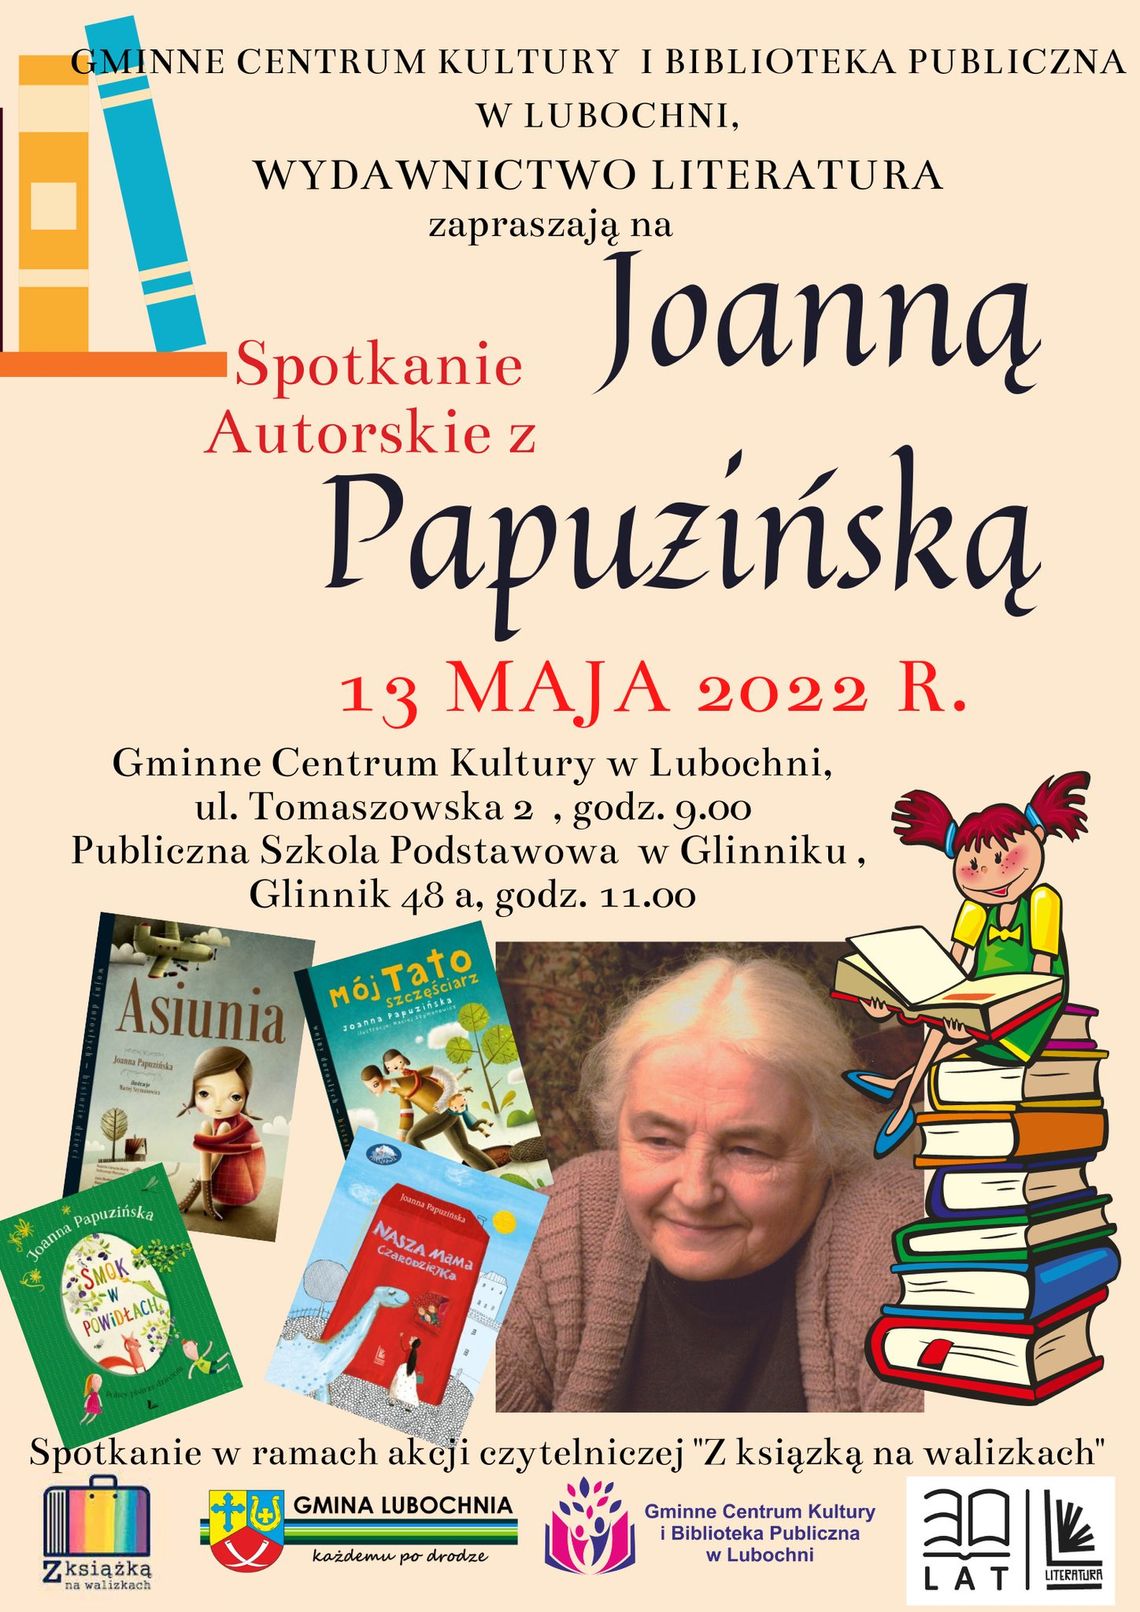 Autorka bestsellerowych książek dla dzieci odwiedzi Lubochnię!